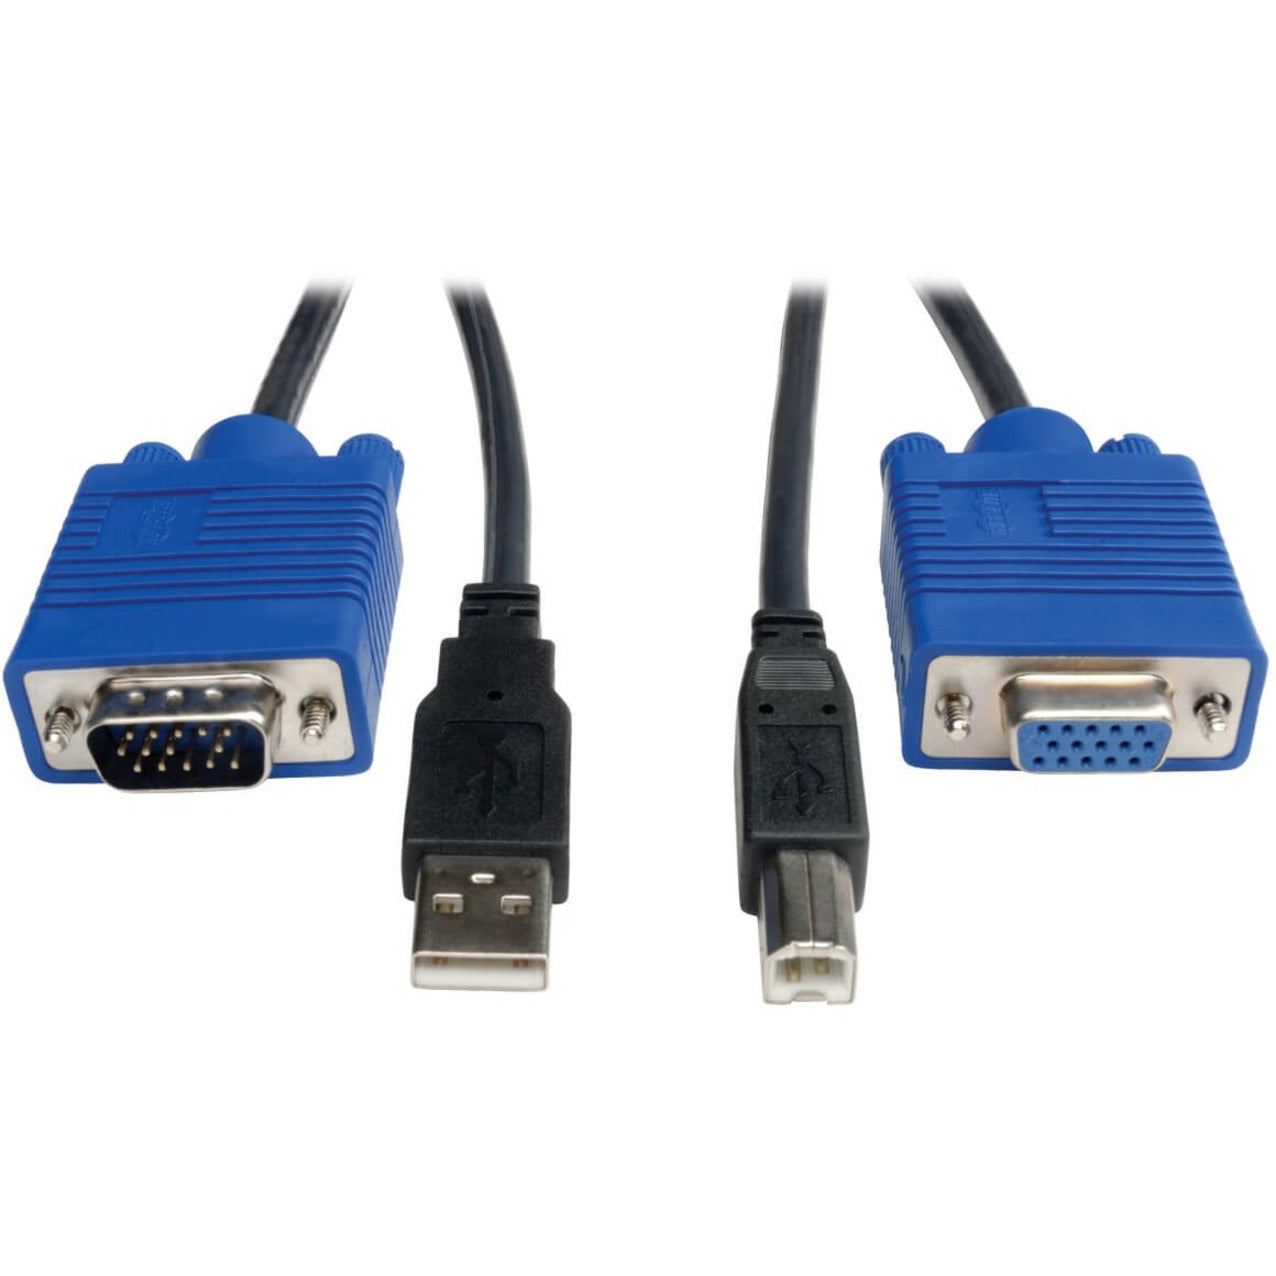 Tripp Lite P758-006 USB KVM Cable, 6 ft. - Lifetime Warranty, Black